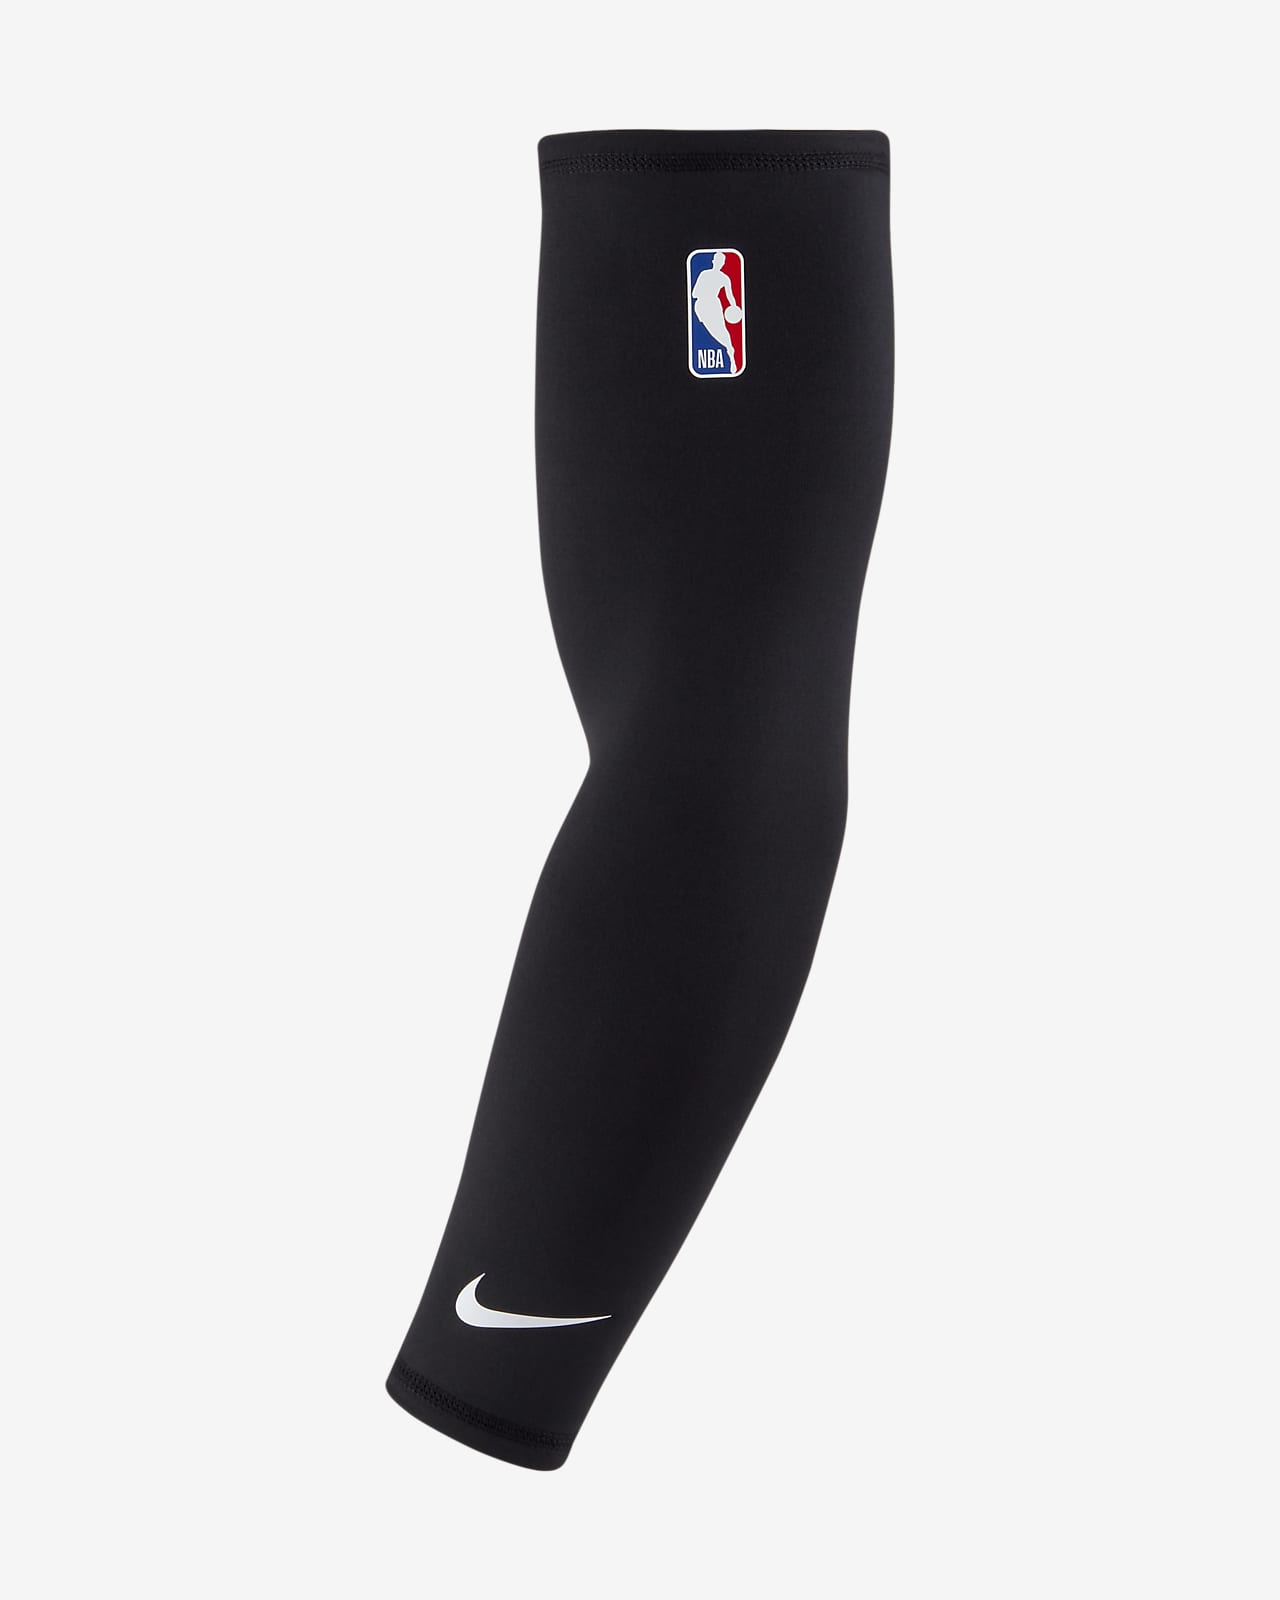 Manga de básquetbol de la NBA Nike